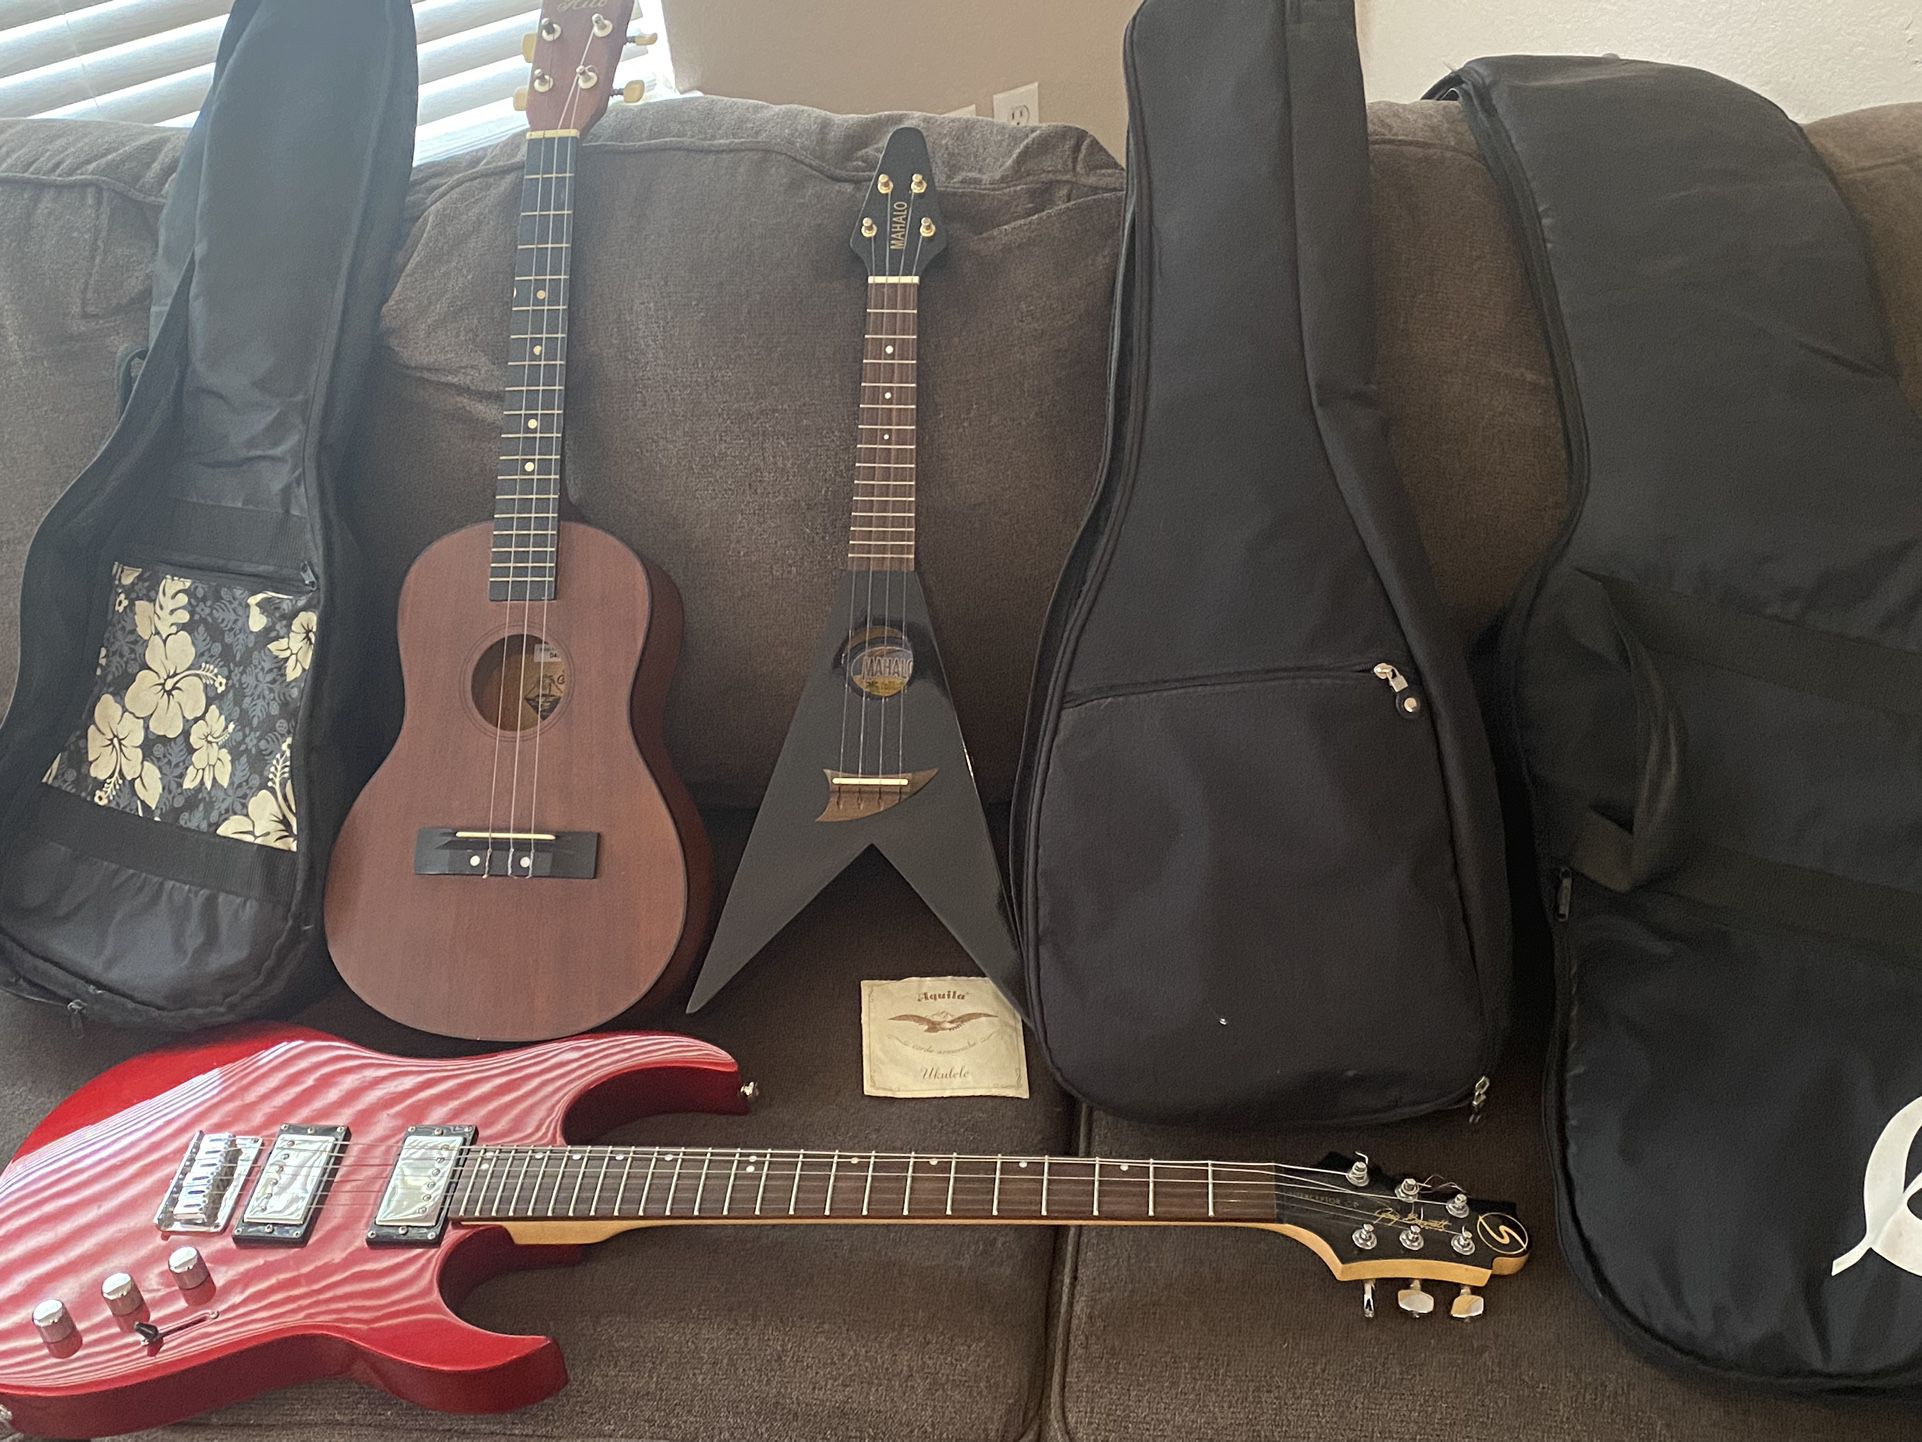 1 Electric Guitar And 2 Ukulele $200